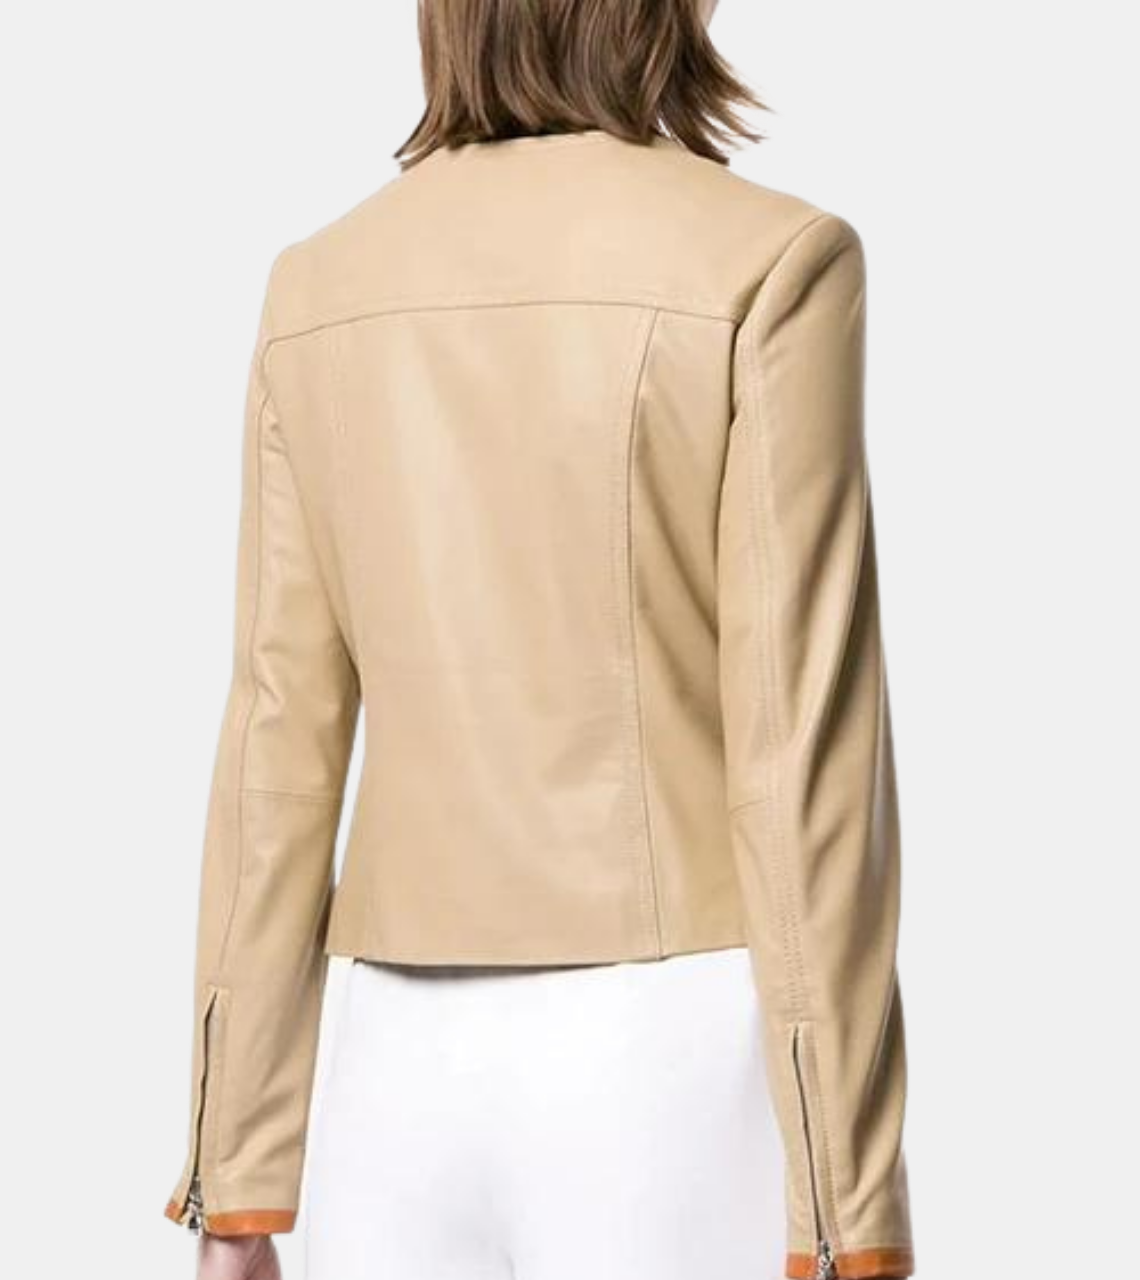 Kline Women's Ivory Leather Jacket Back